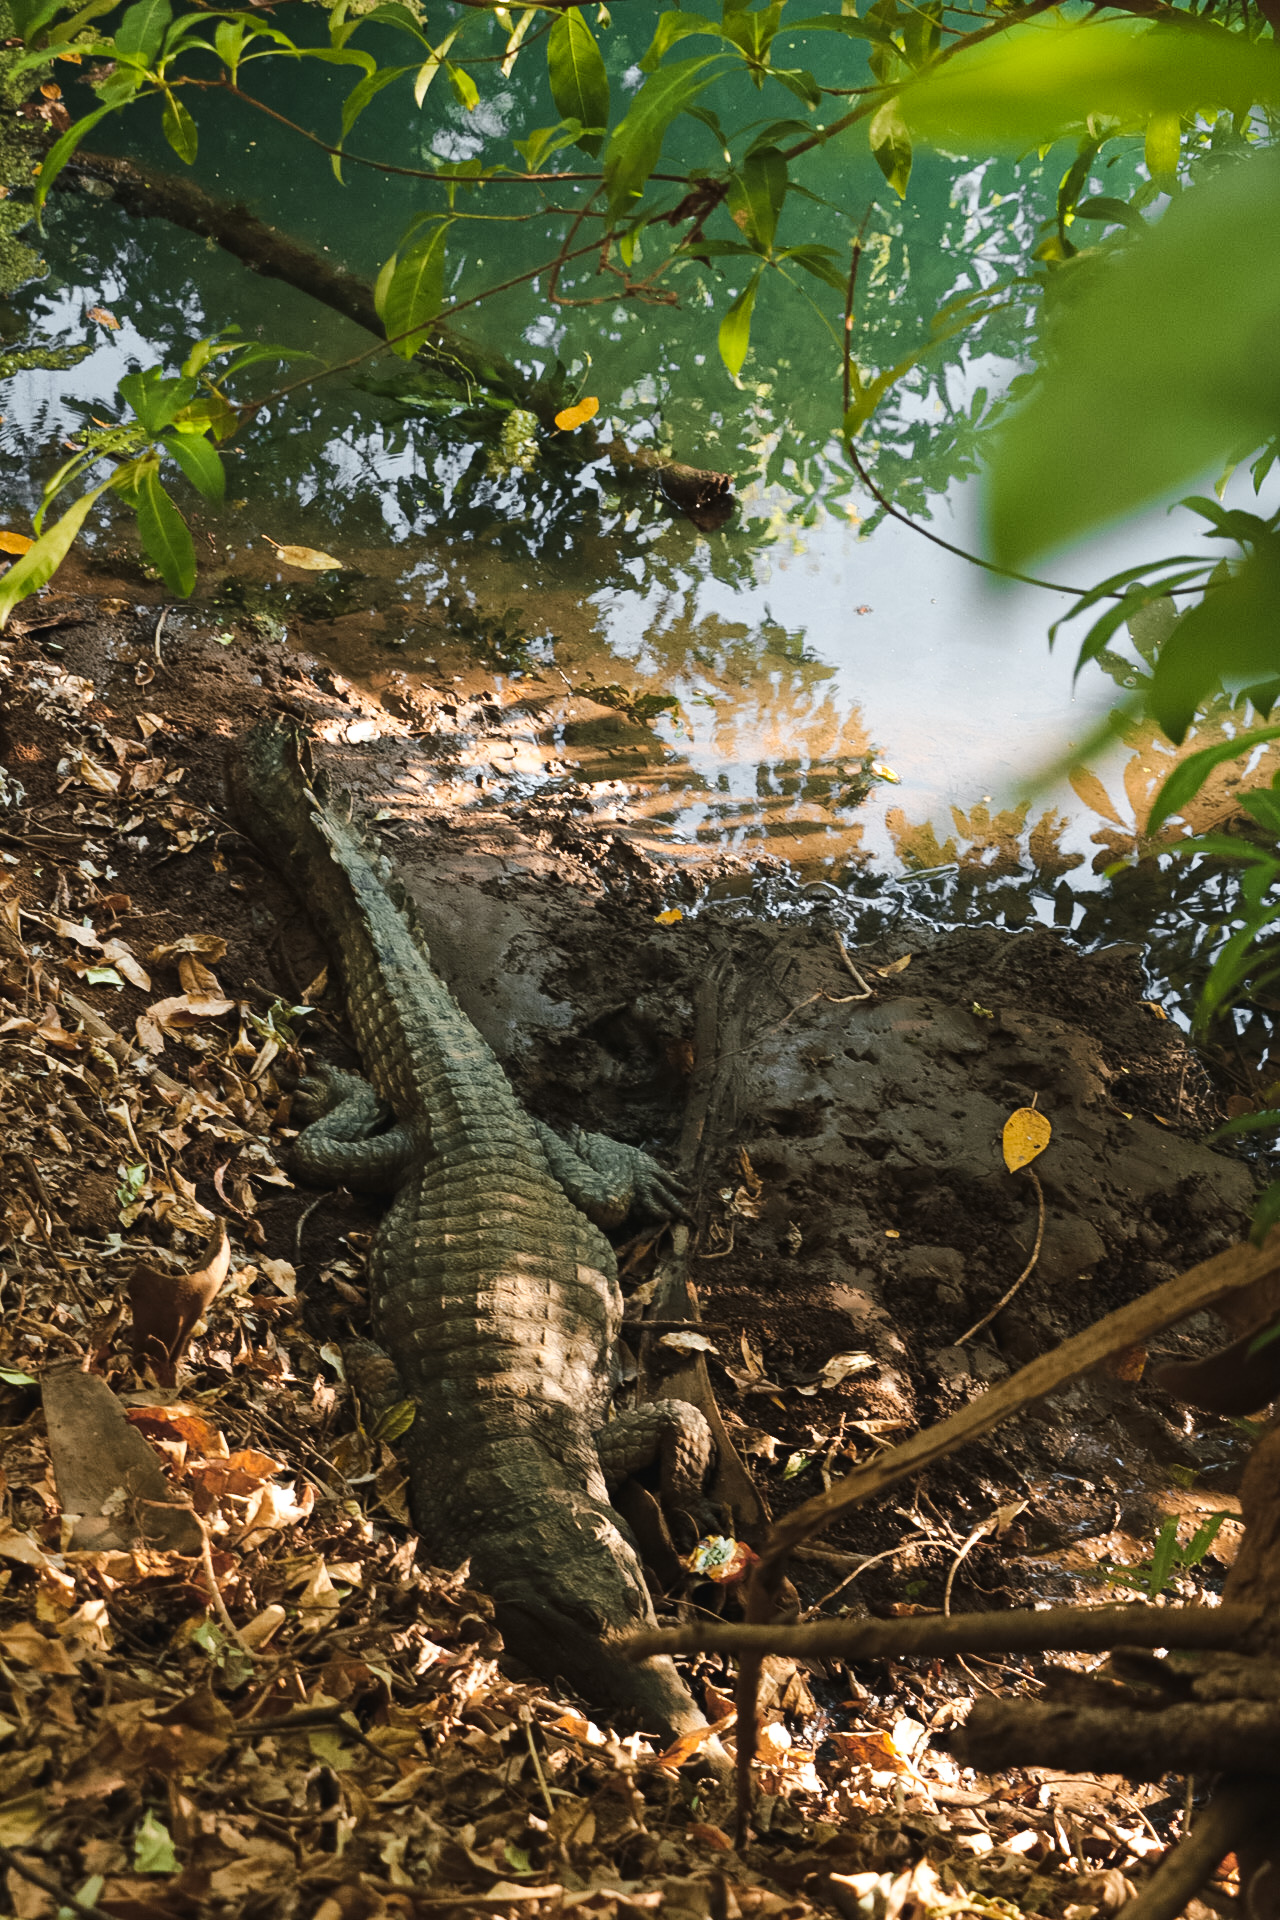 Hot days and crocodiles at the Mataranka Hot Springs – Australia Travel Diary